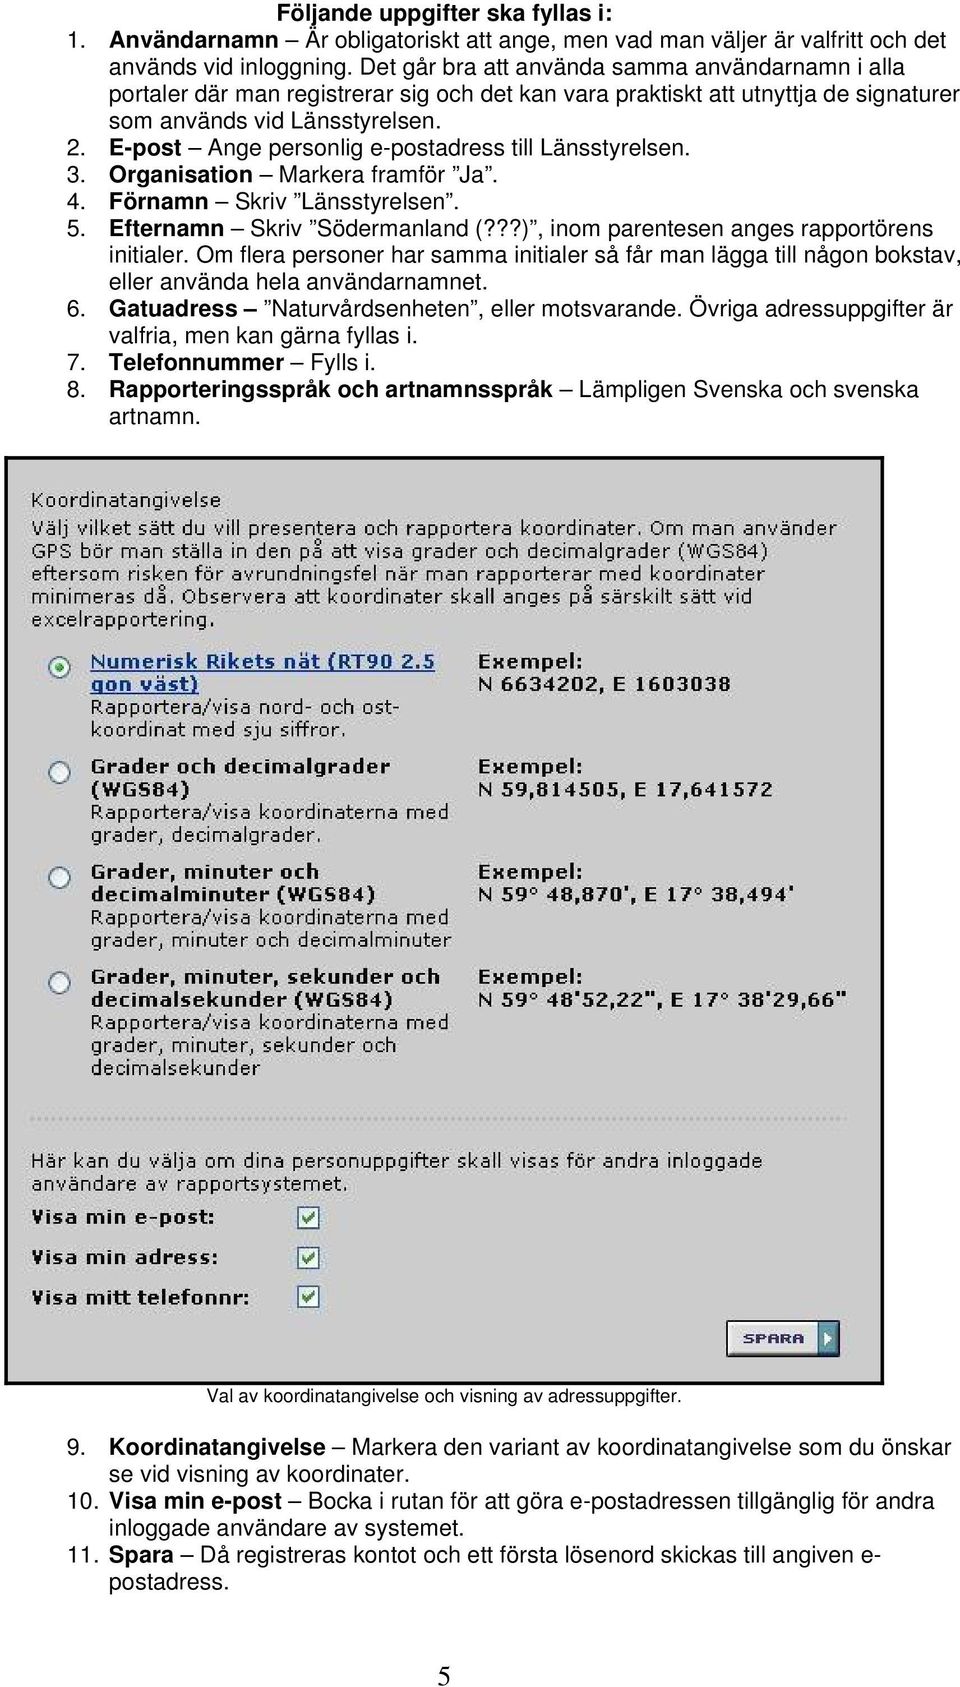 E-post Ange personlig e-postadress till Länsstyrelsen. 3. Organisation Markera framför Ja. 4. Förnamn Skriv Länsstyrelsen. 5. Efternamn Skriv Södermanland (?